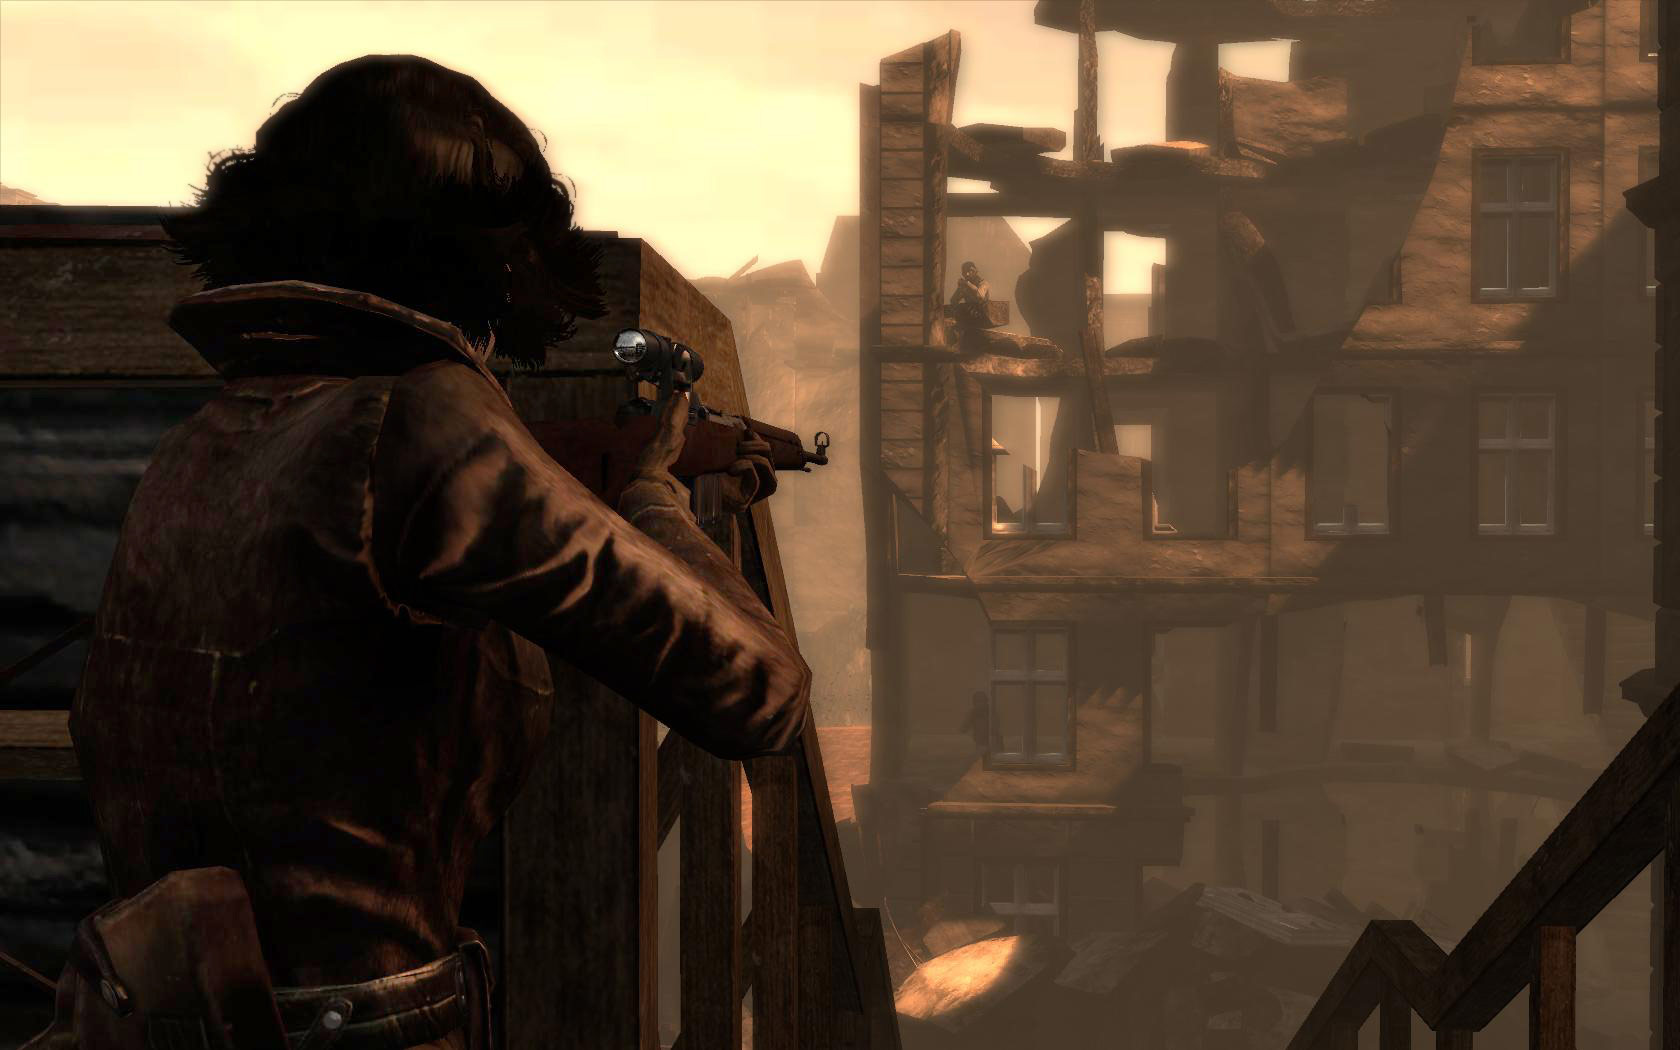 Velvet Assassin screenshot